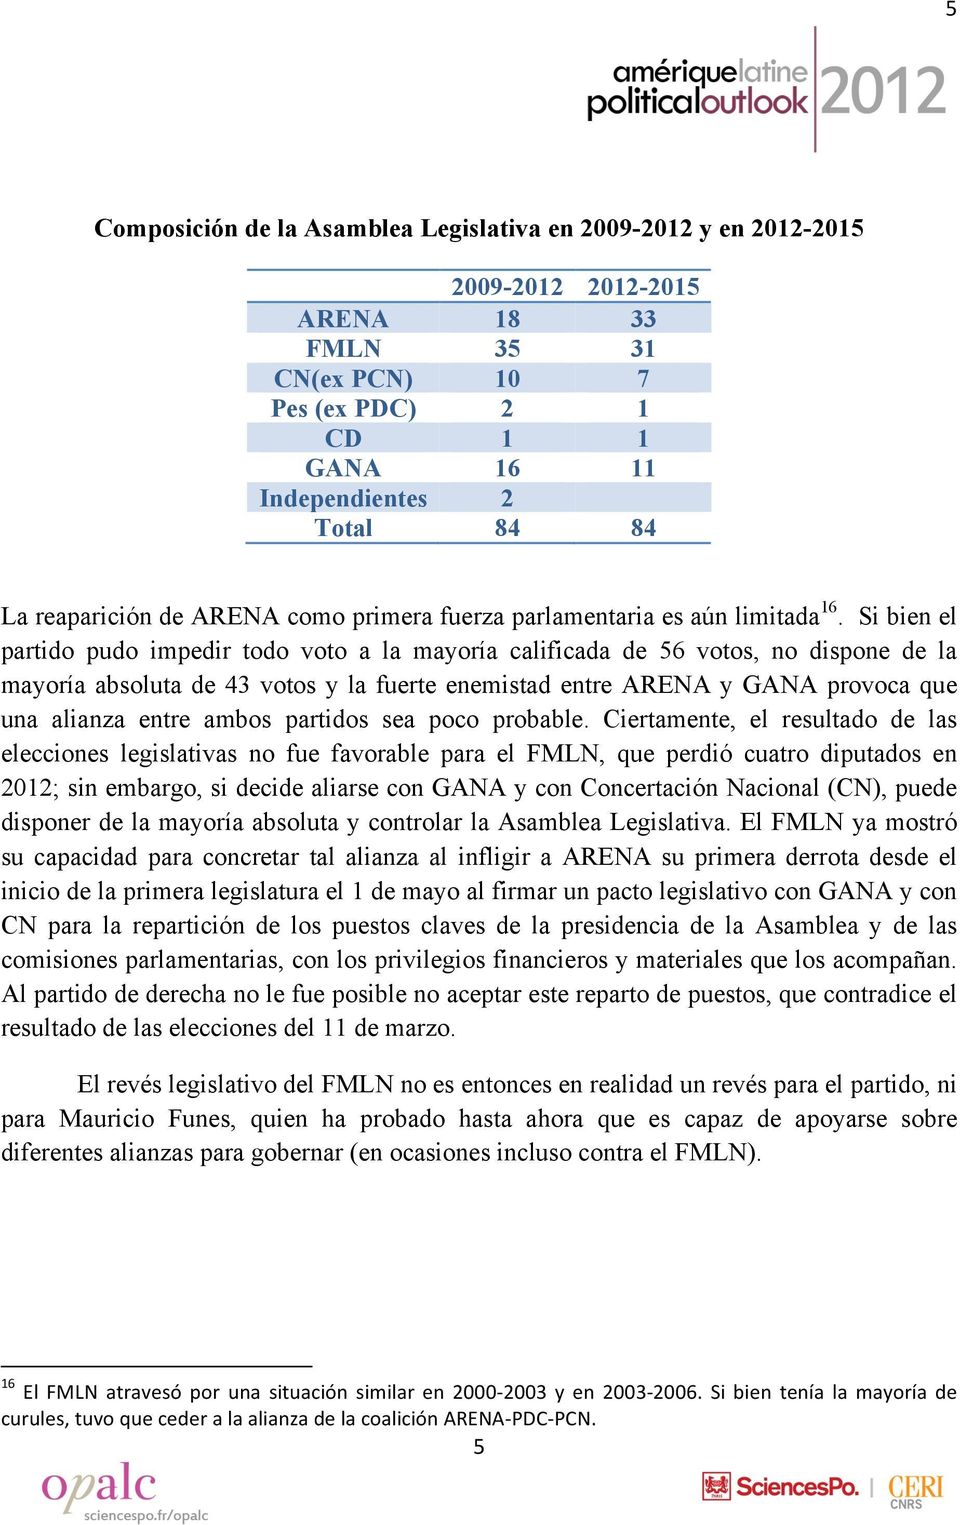 Si bien el partido pudo impedir todo voto a la mayoría calificada de 56 votos, no dispone de la mayoría absoluta de 43 votos y la fuerte enemistad entre ARENA y GANA provoca que una alianza entre